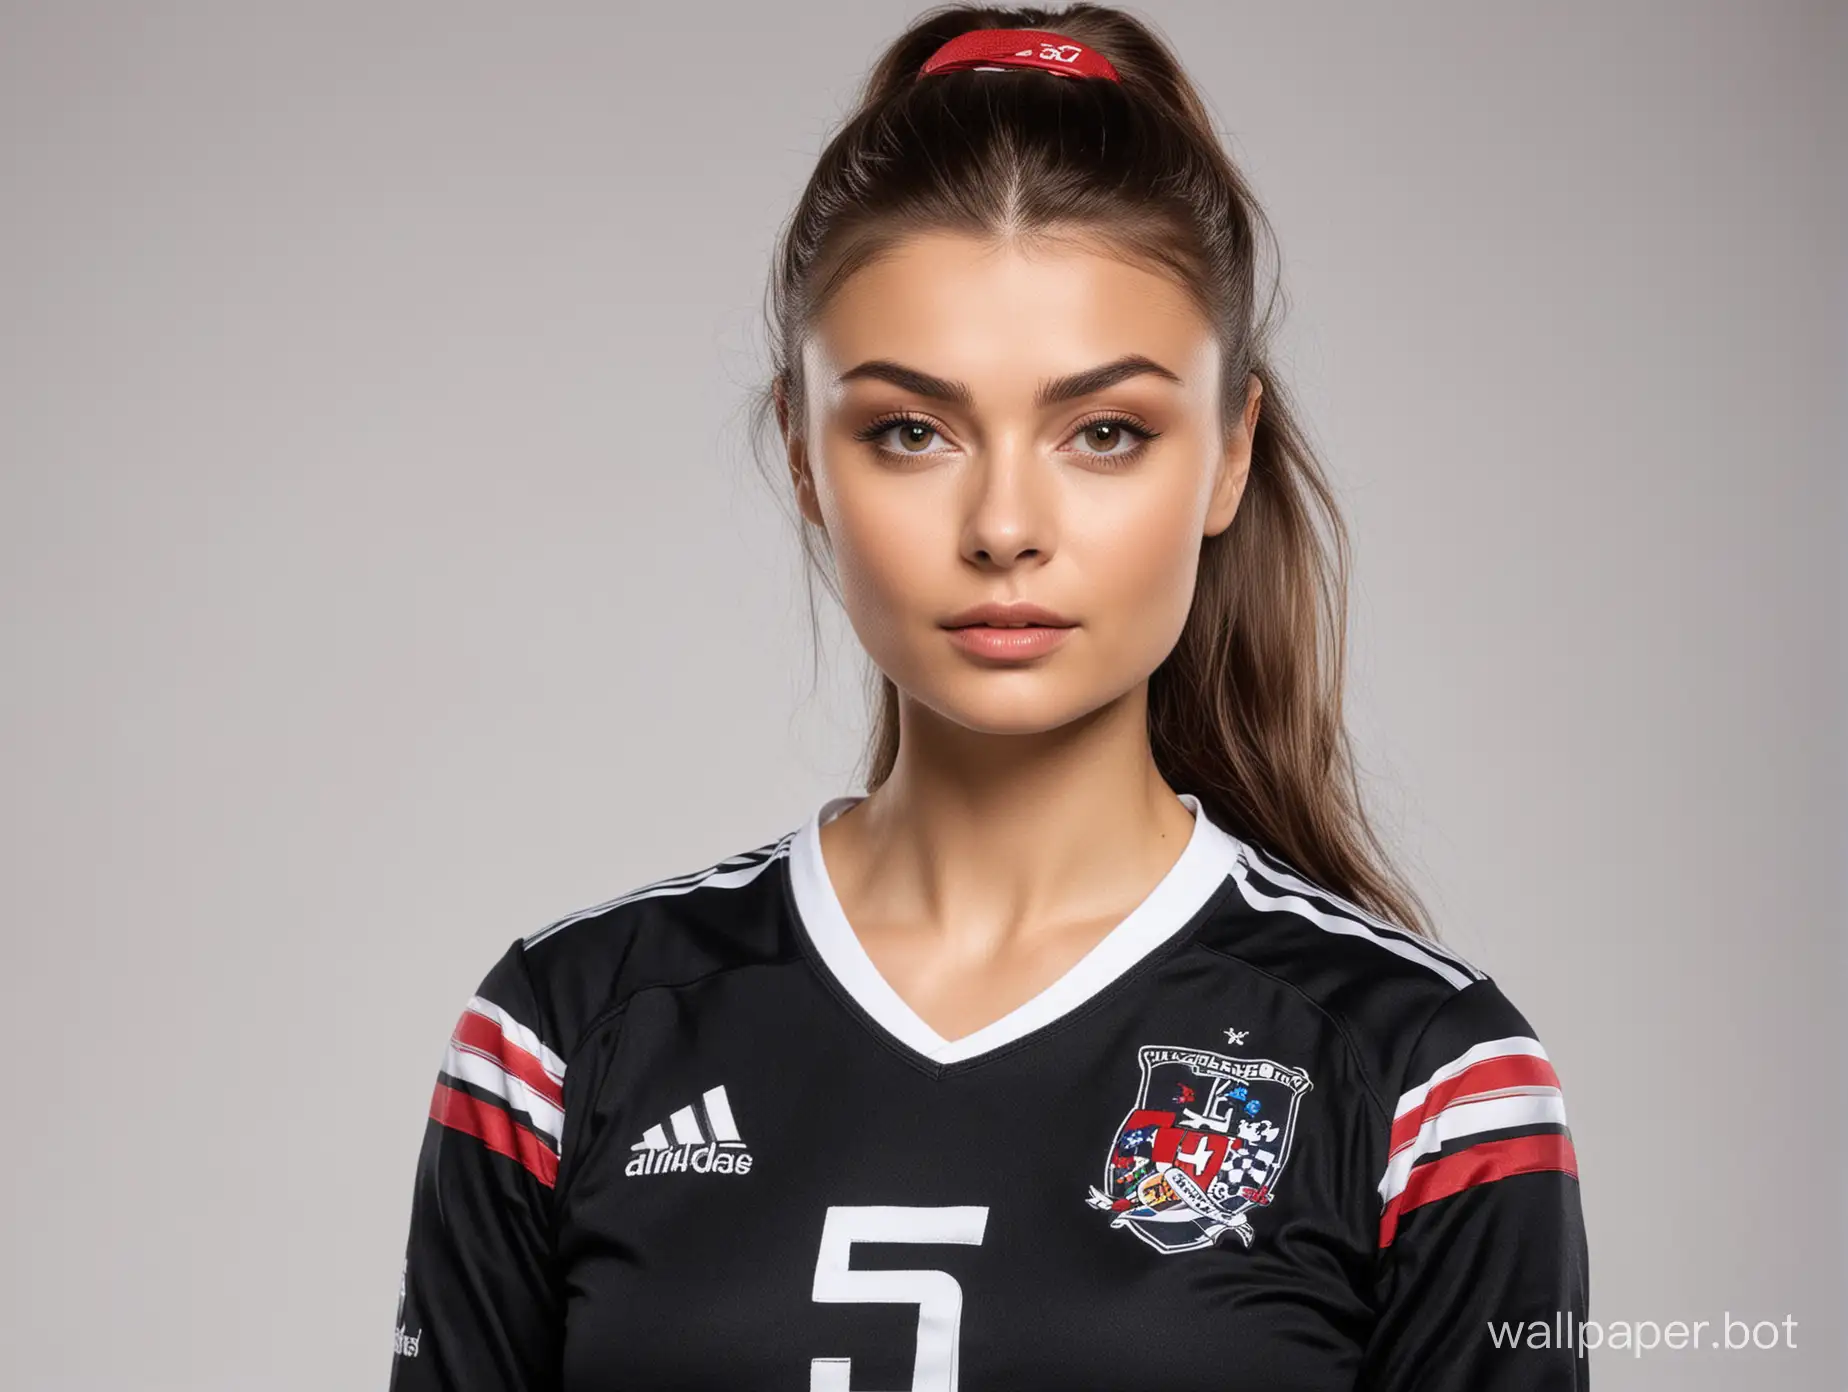 Alina-Kabaeva-Athletic-Portrait-in-Black-Soccer-Uniform